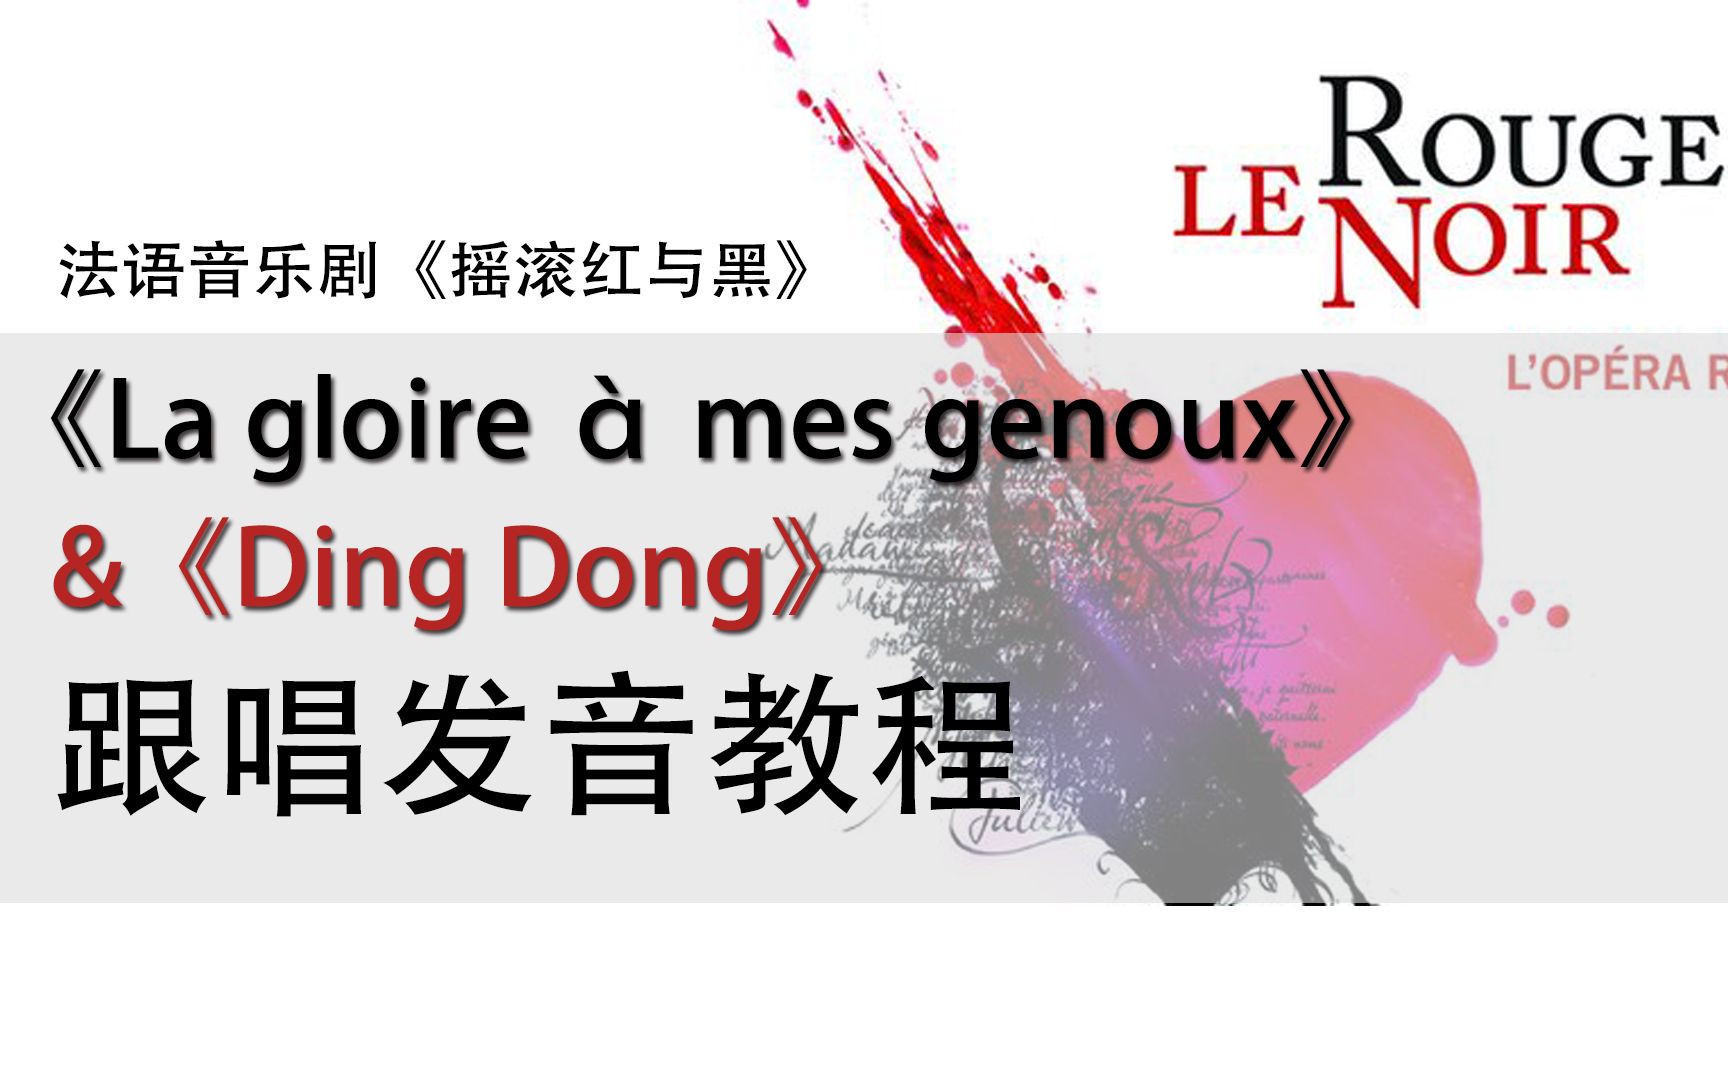 【荣耀向我俯首la gloire à mes genoux】&【Ding Dong】跟唱发音教程 | 音乐剧摇滚红与黑